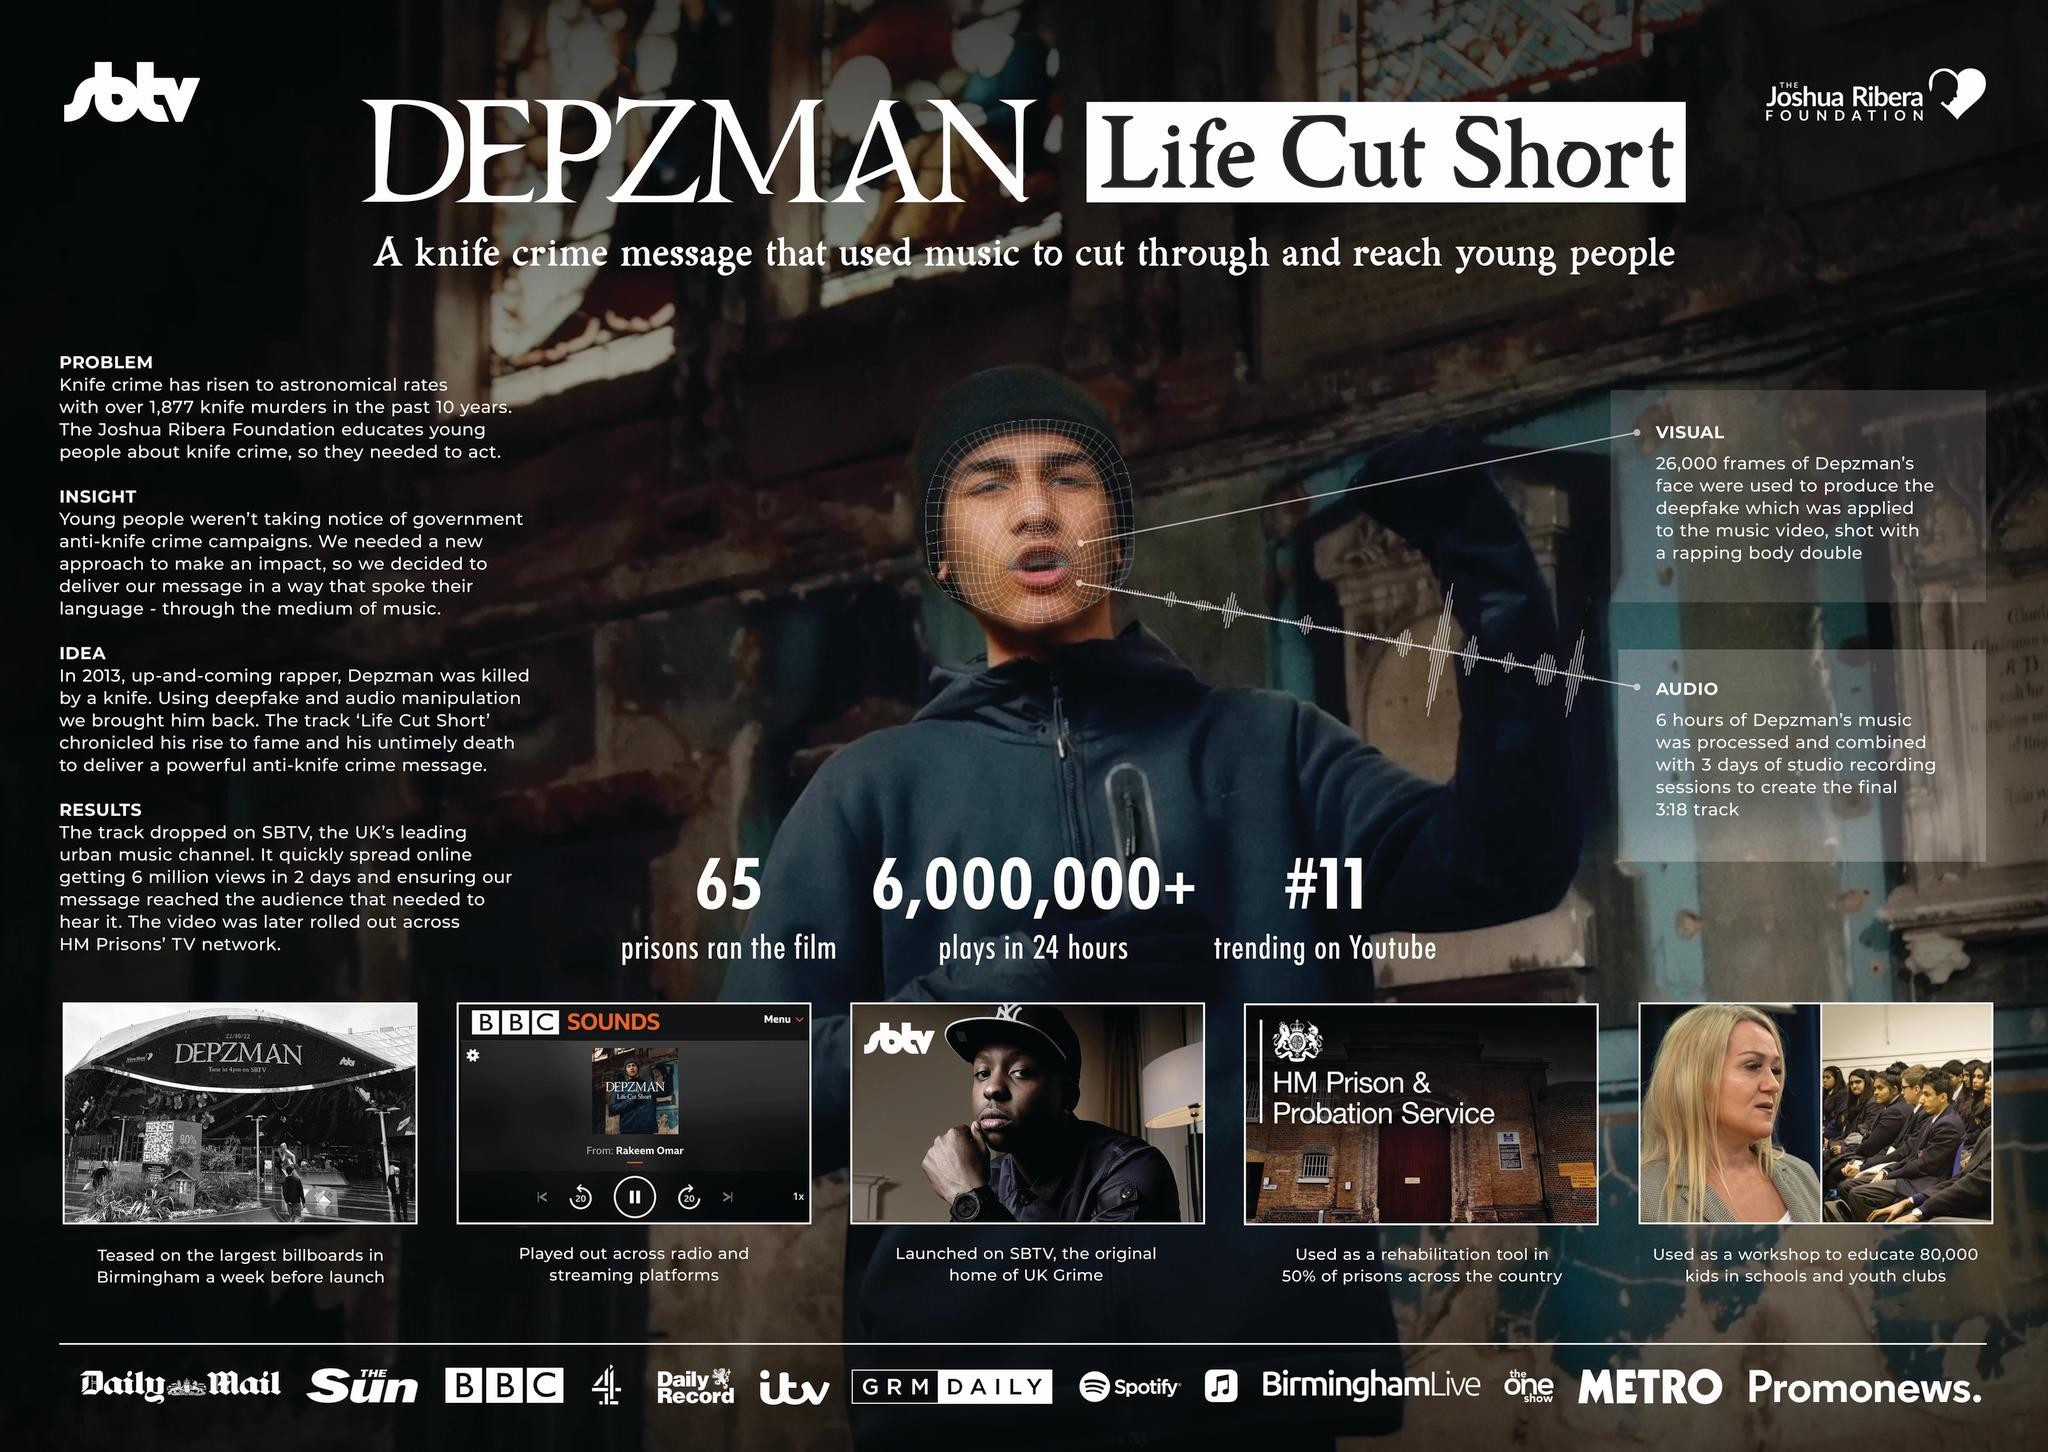 DEPZMAN - LIFE CUT SHORT